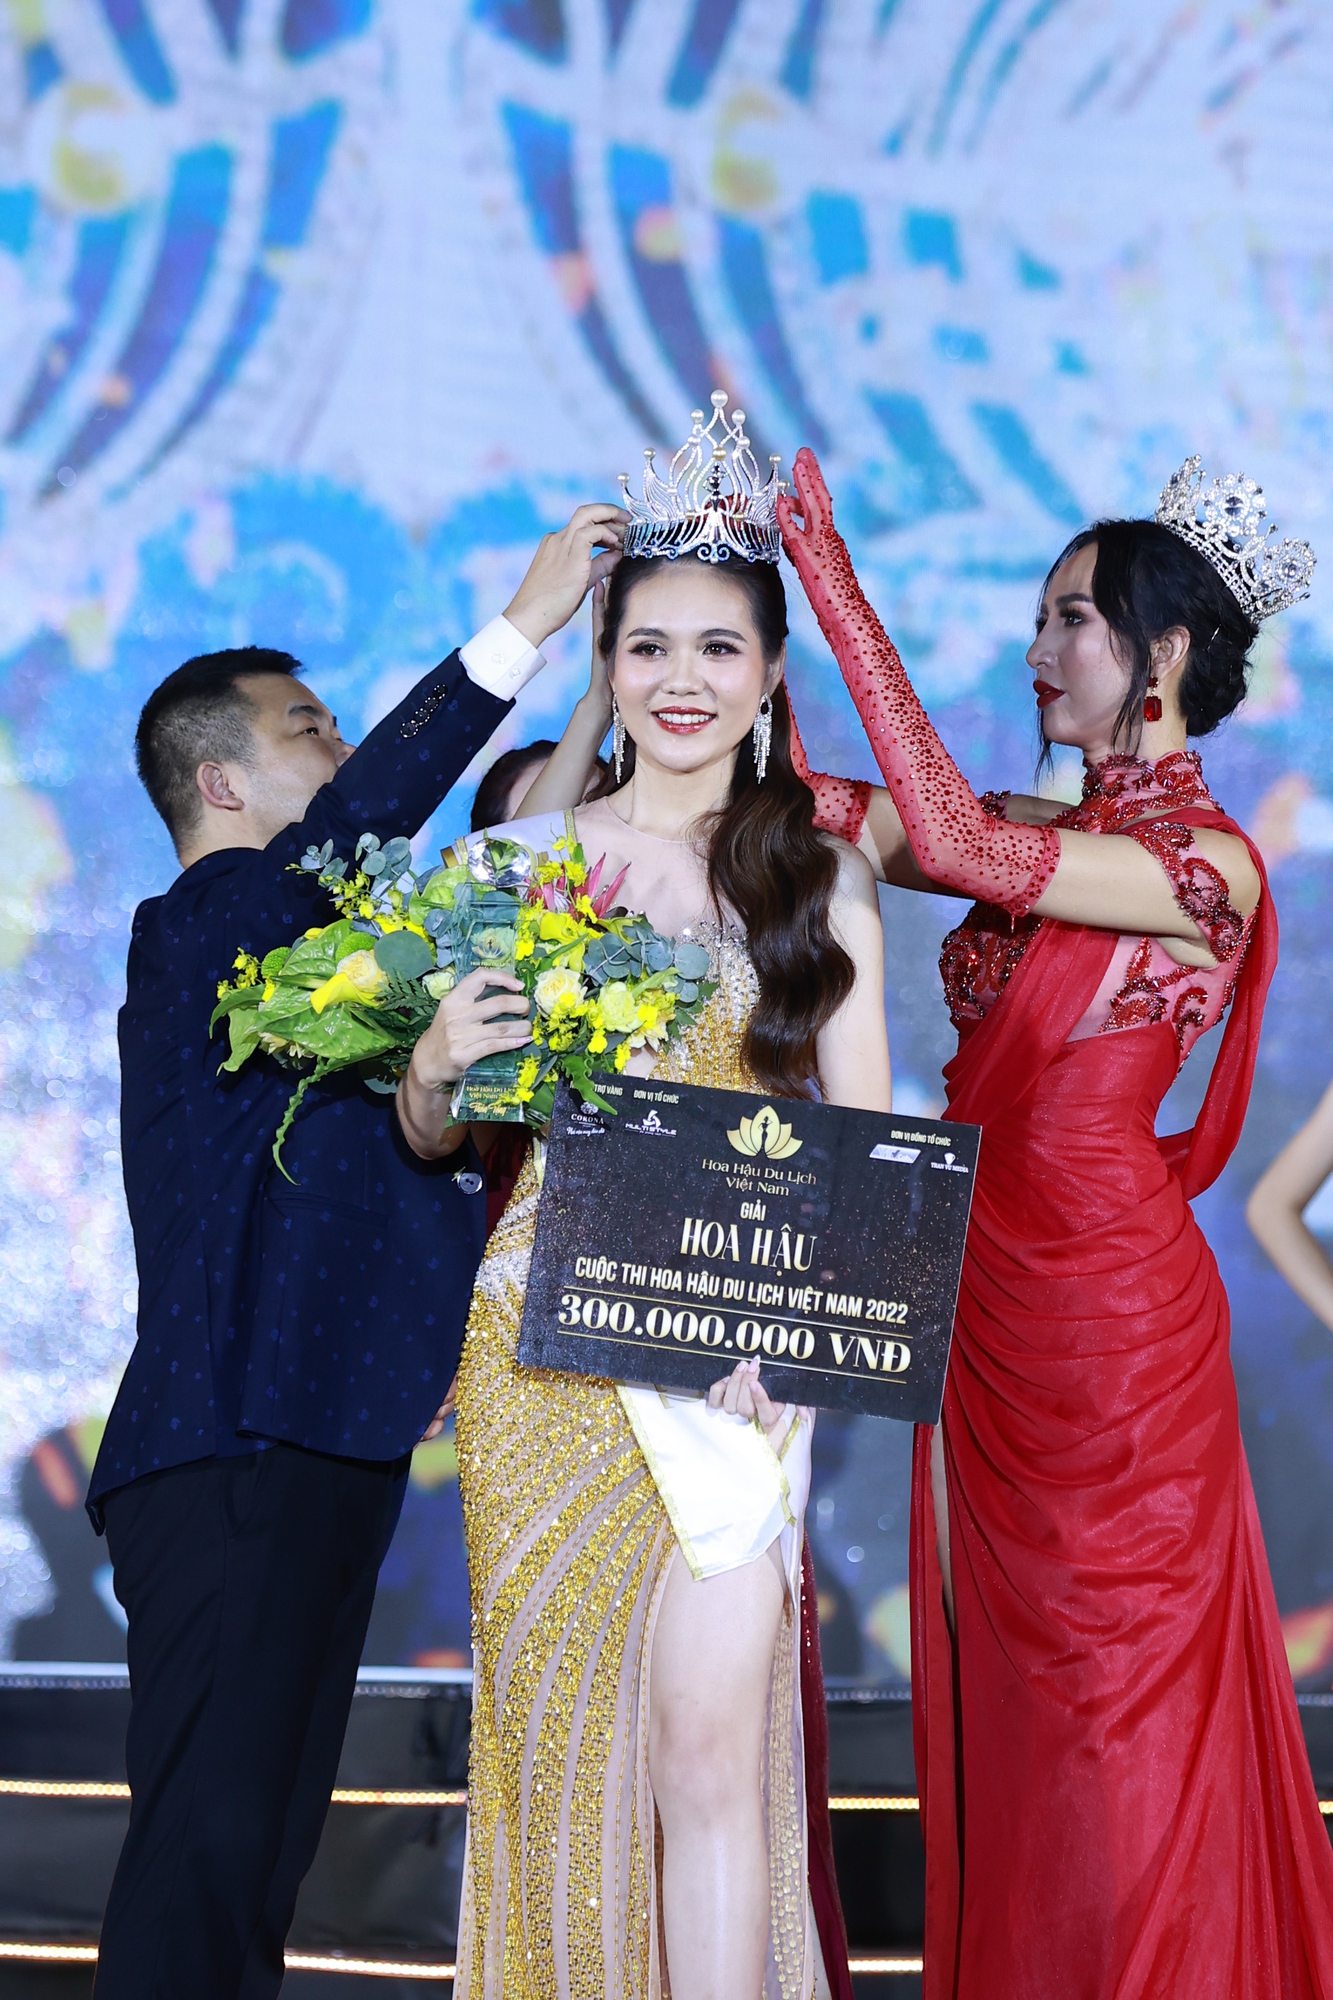 Lương Kỳ Duyên đăng quang Hoa hậu Du lịch Việt Nam 2022 - Ảnh 1.